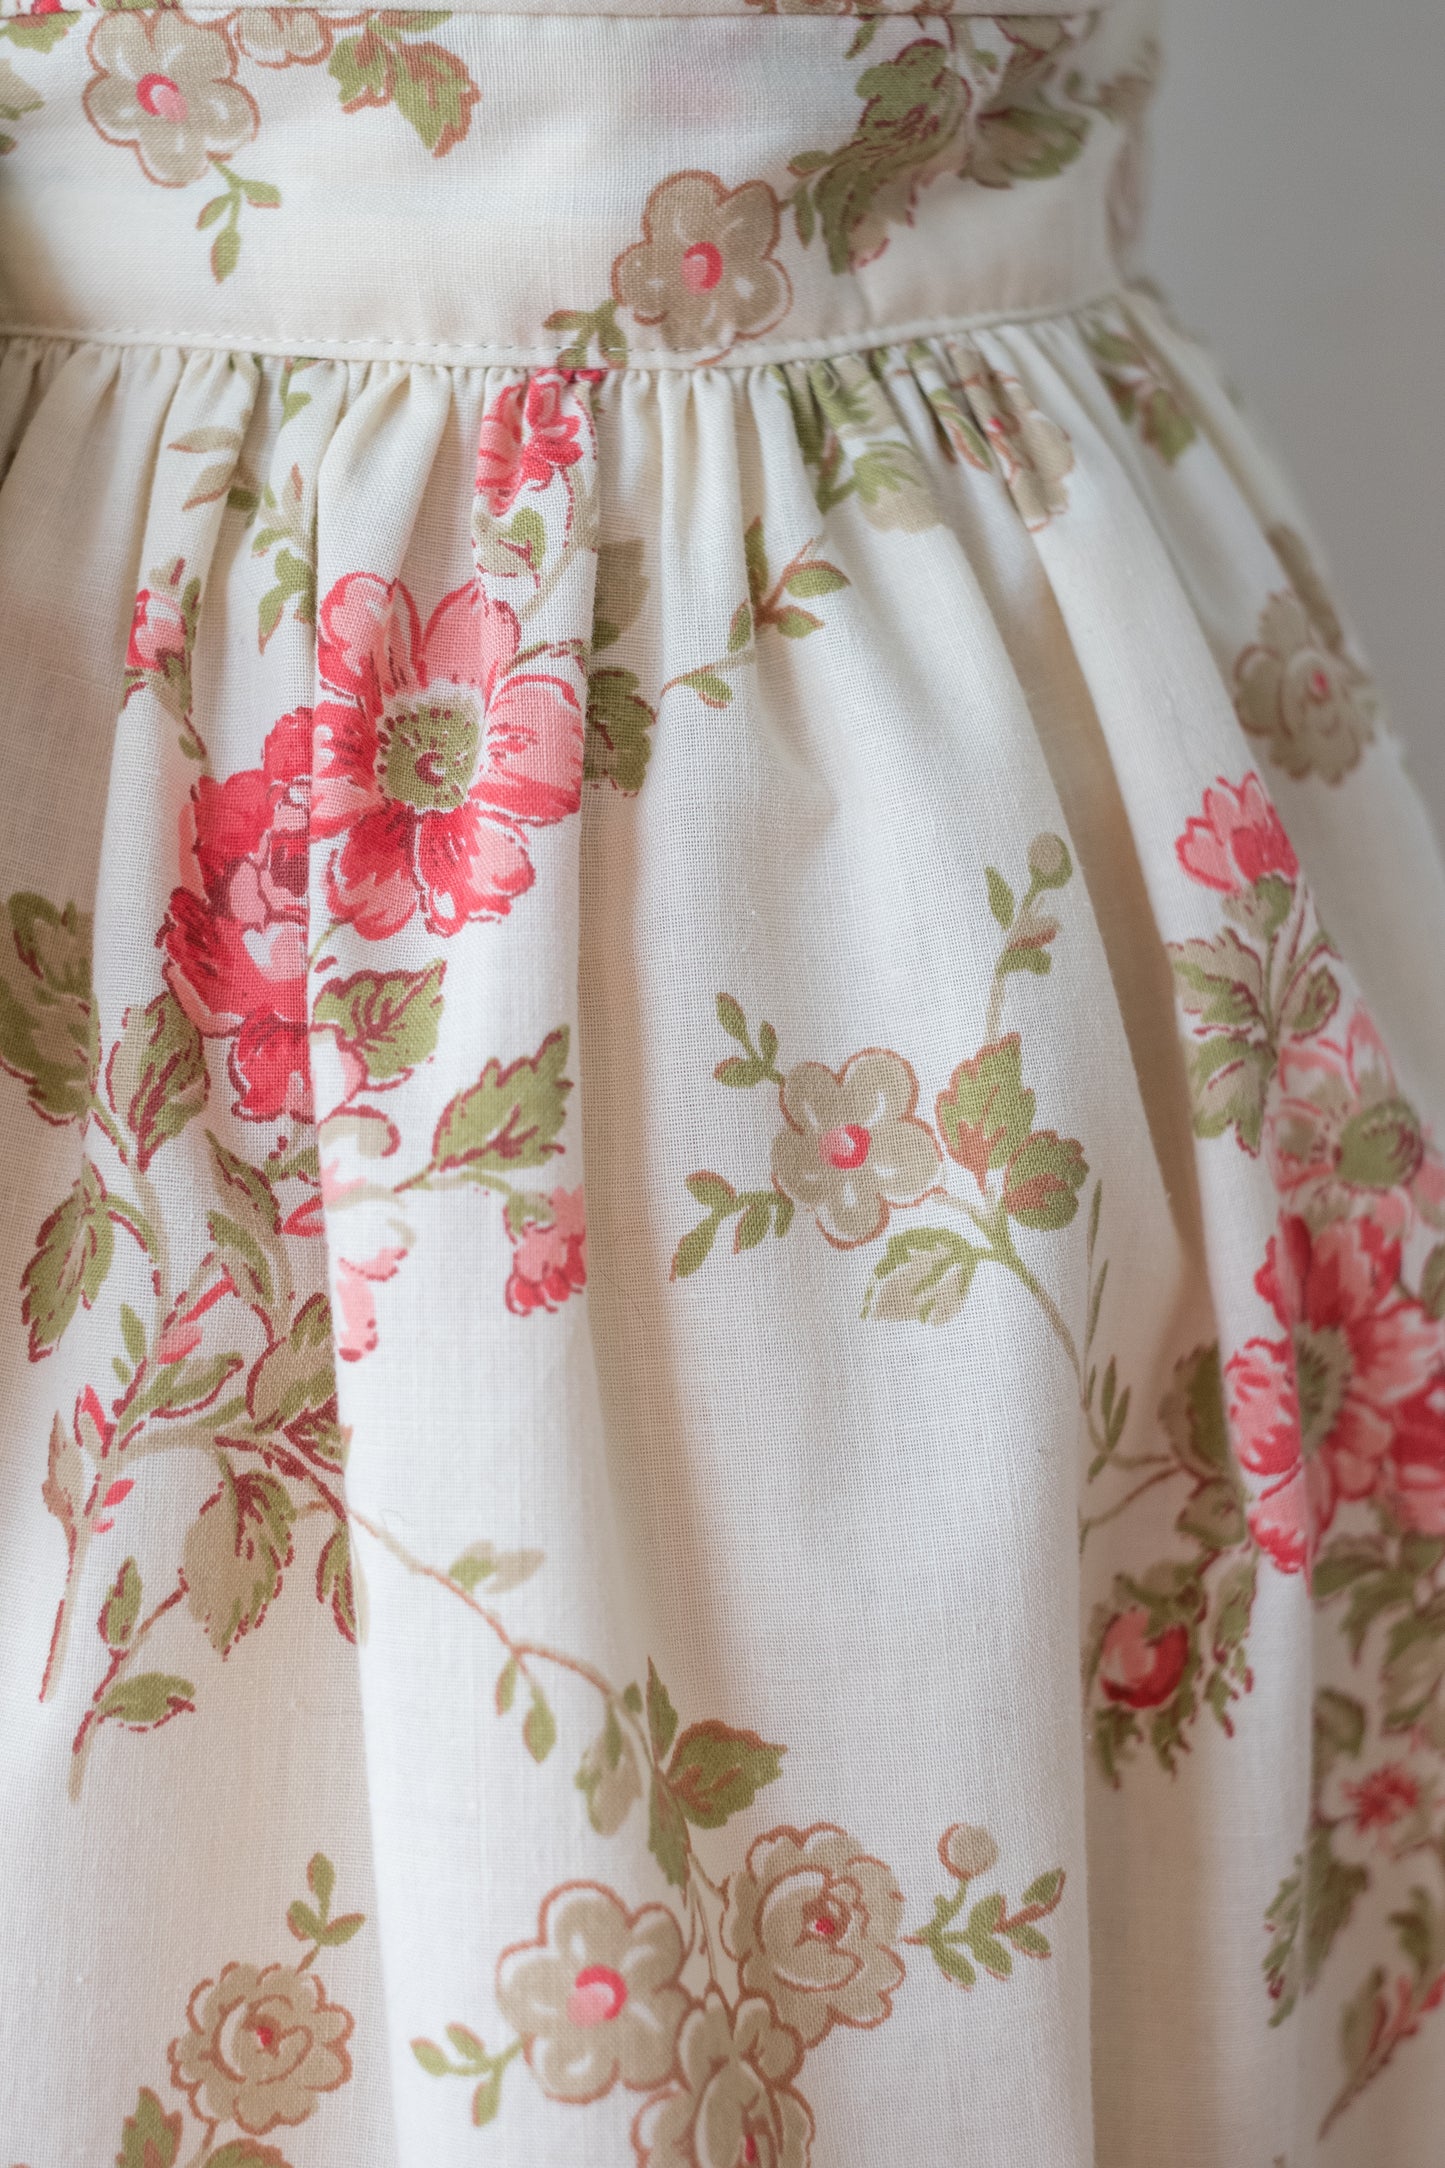 Handmade vintage floral apron set - pink rose